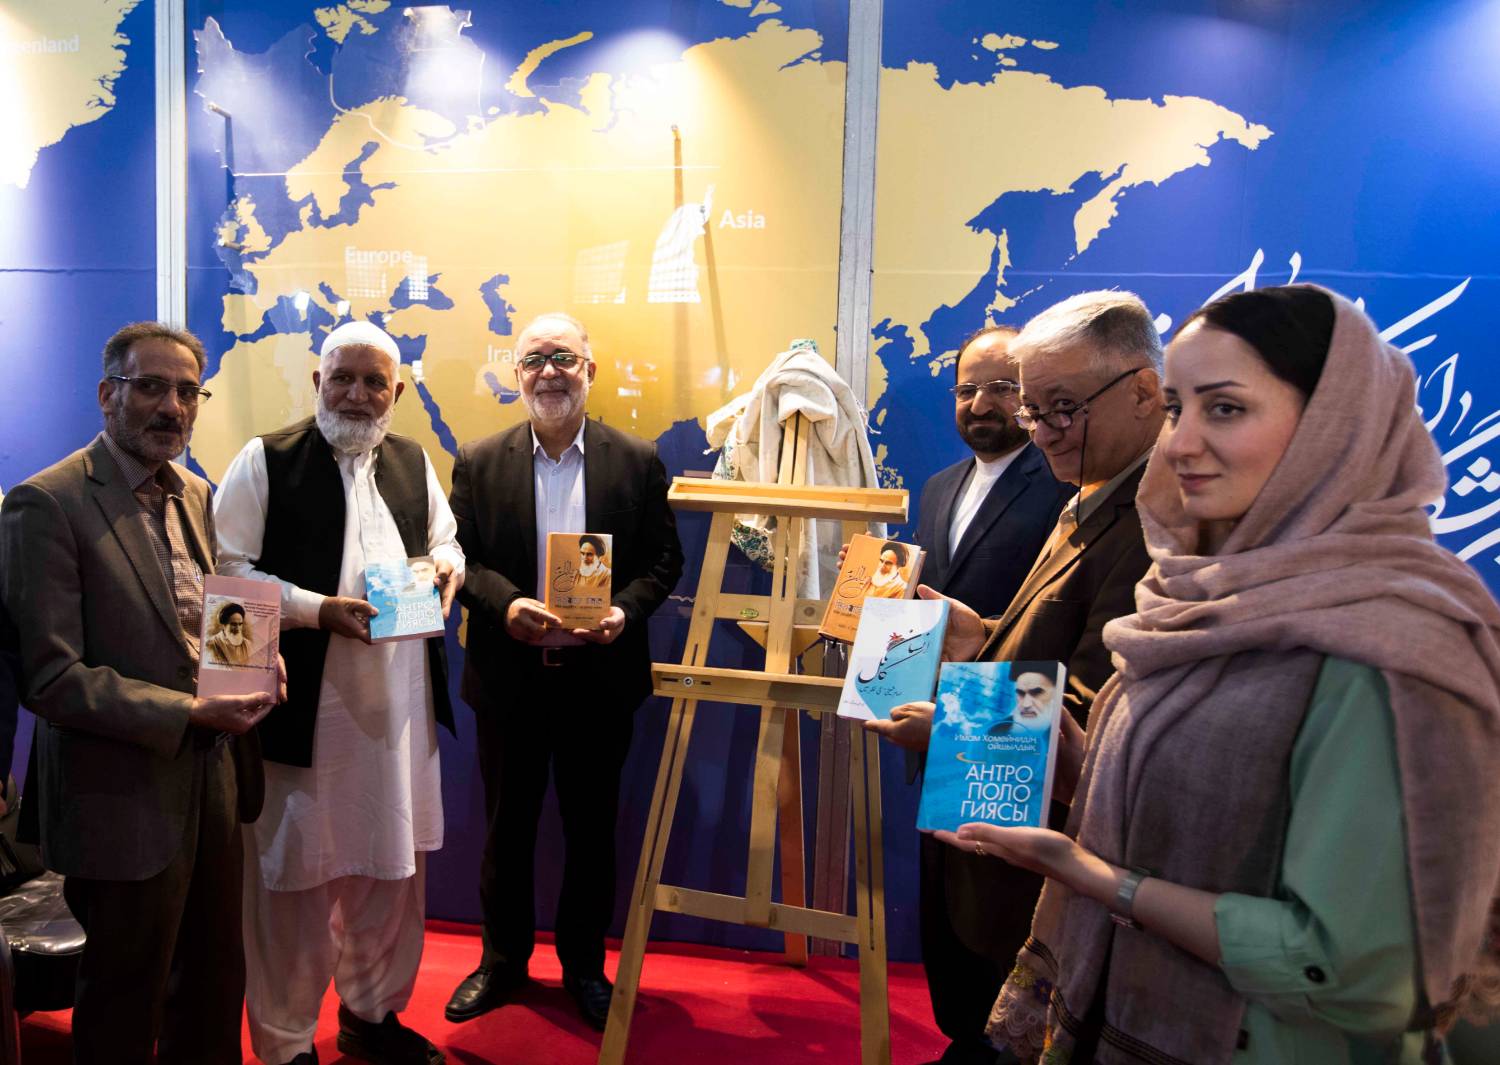 Assemblée sur les répercussions de la publication et de la médiatisation des œuvres de l’imam Khomeini (ra) dans les pays de la région.